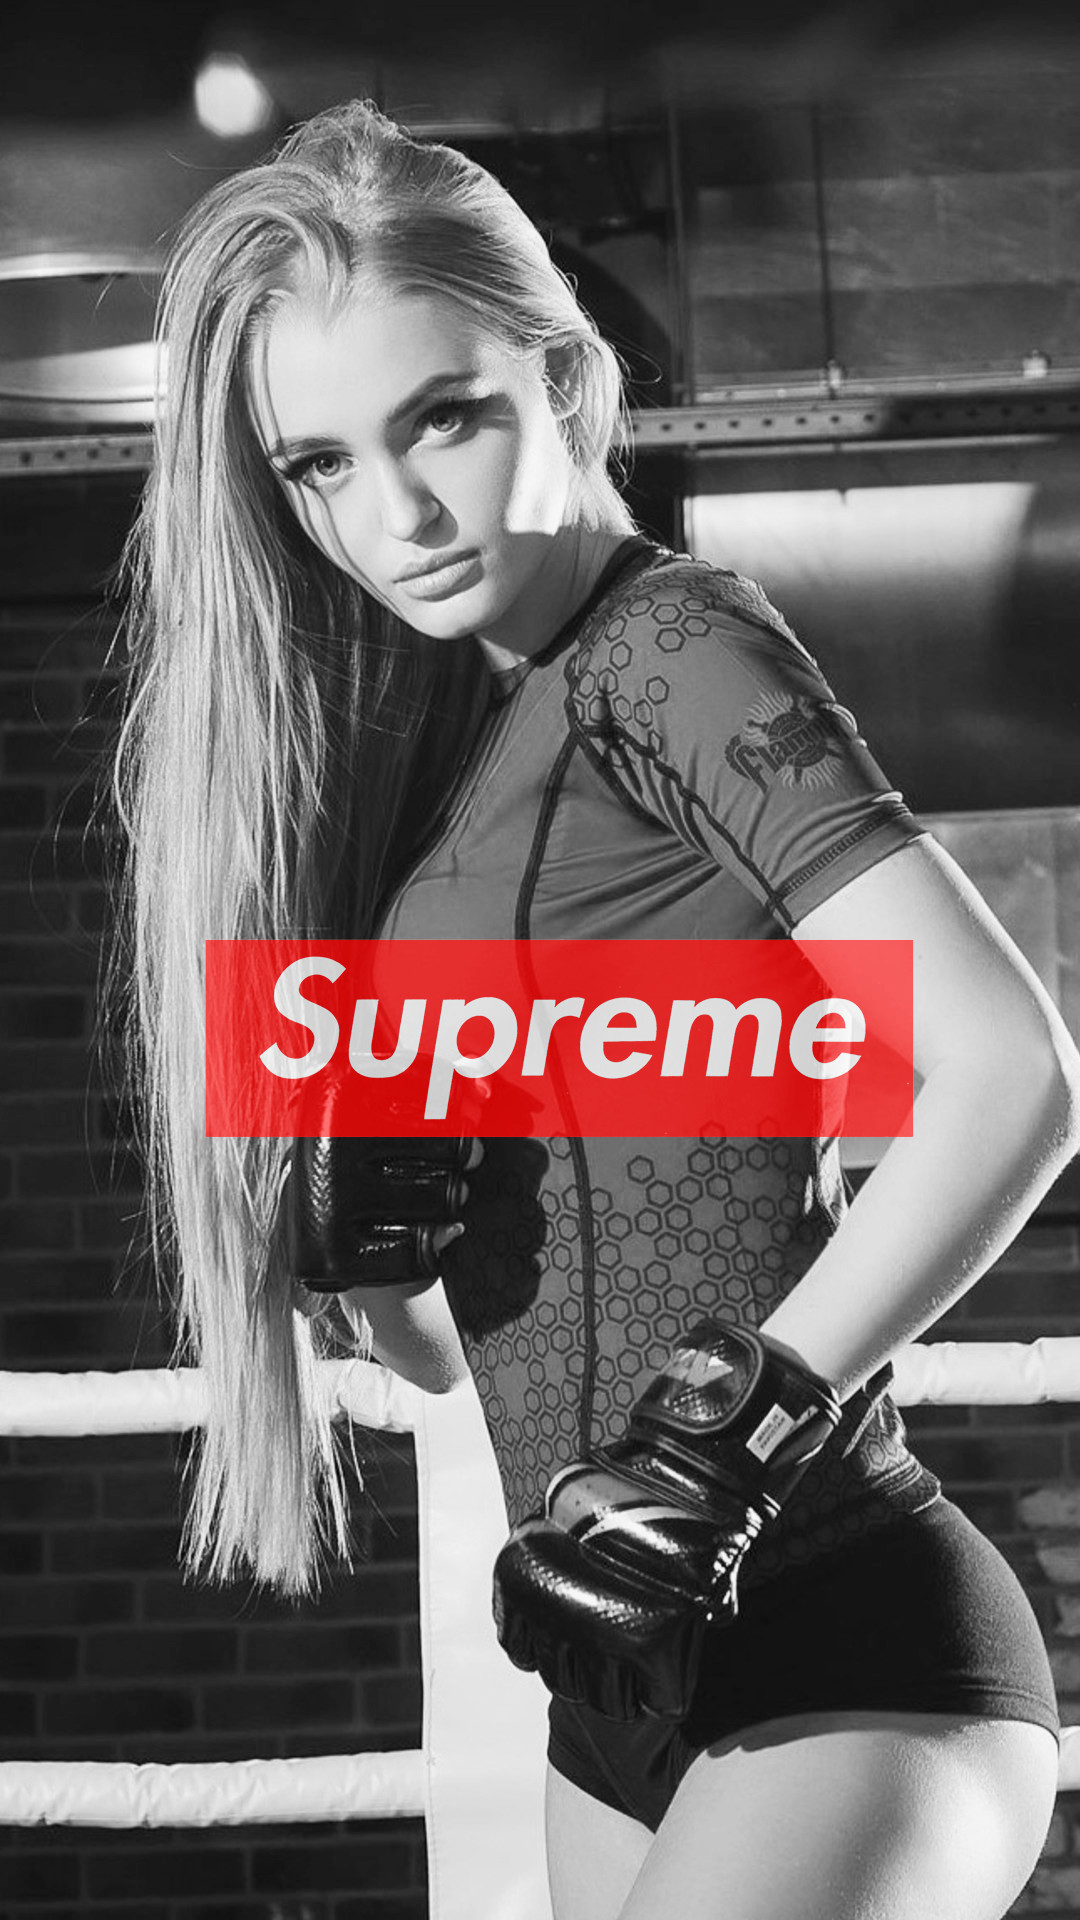 1080x1920 Nice Supreme Girl iPhone Wallpaper #supreme #Girl #iPhone #wallpaper  #fitness Supreme